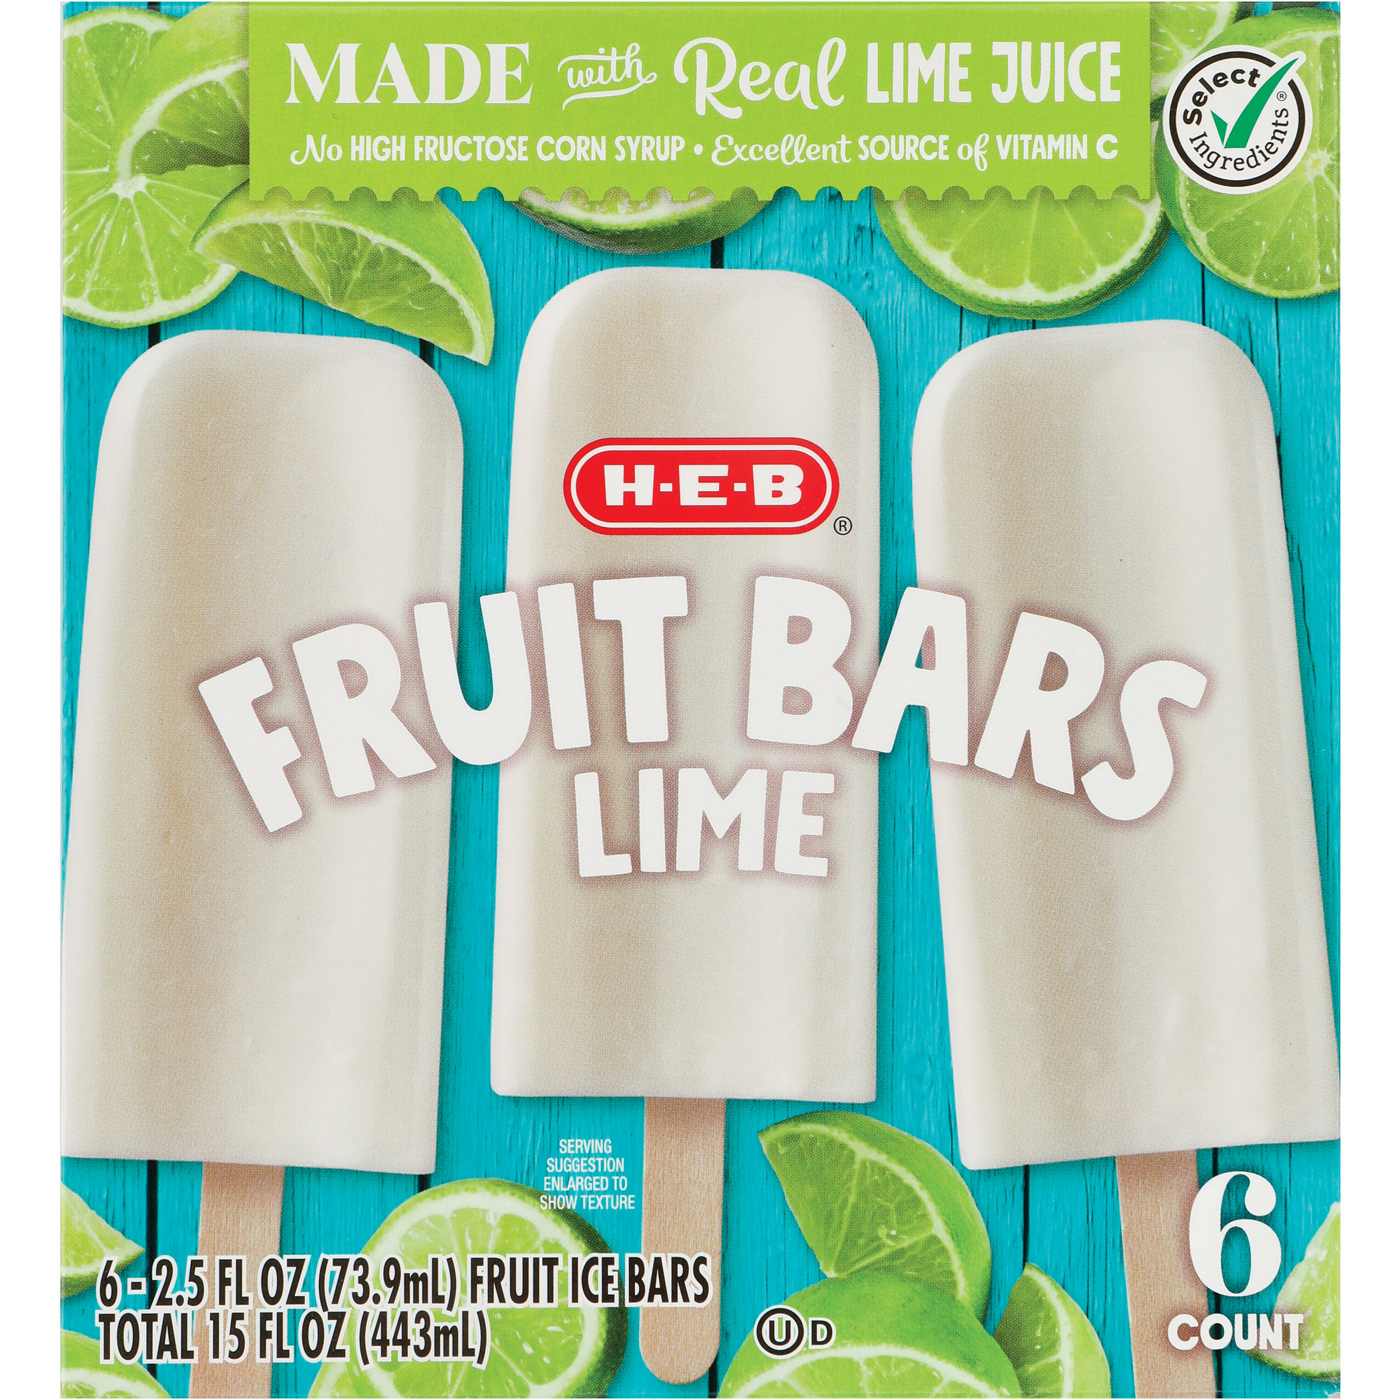 H-E-B Frozen Fruit Bars - Lime; image 1 of 2